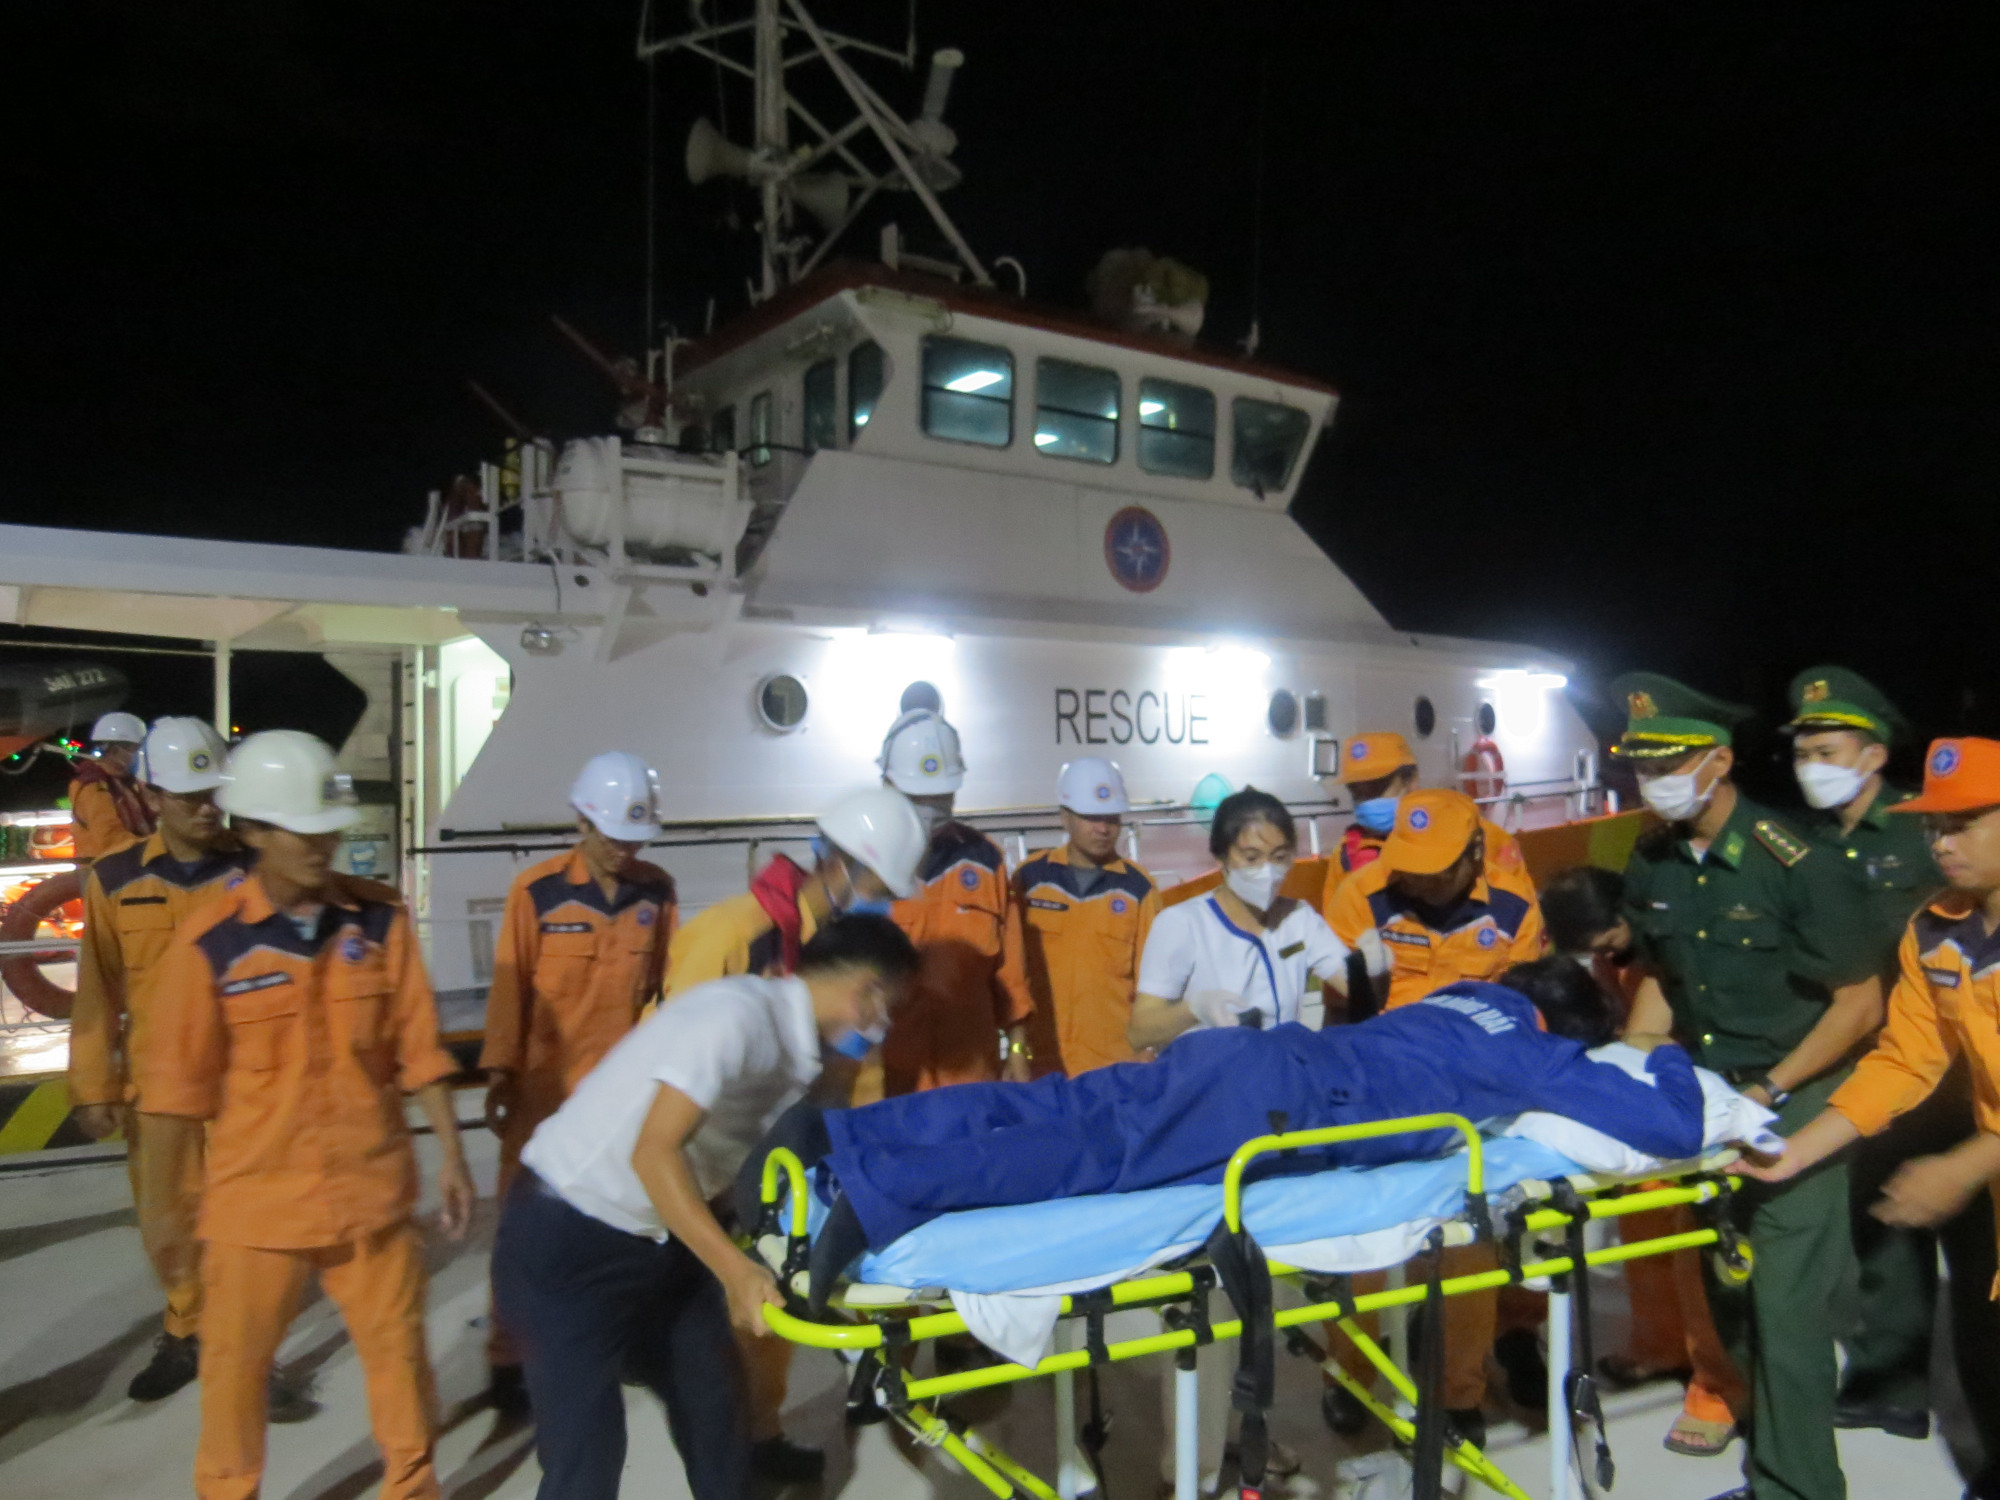 Thuyền viên bị bệnh lý gặp khó khăn trong việc đi lại được các lực lượng hỗ trợ khi về đến bờ